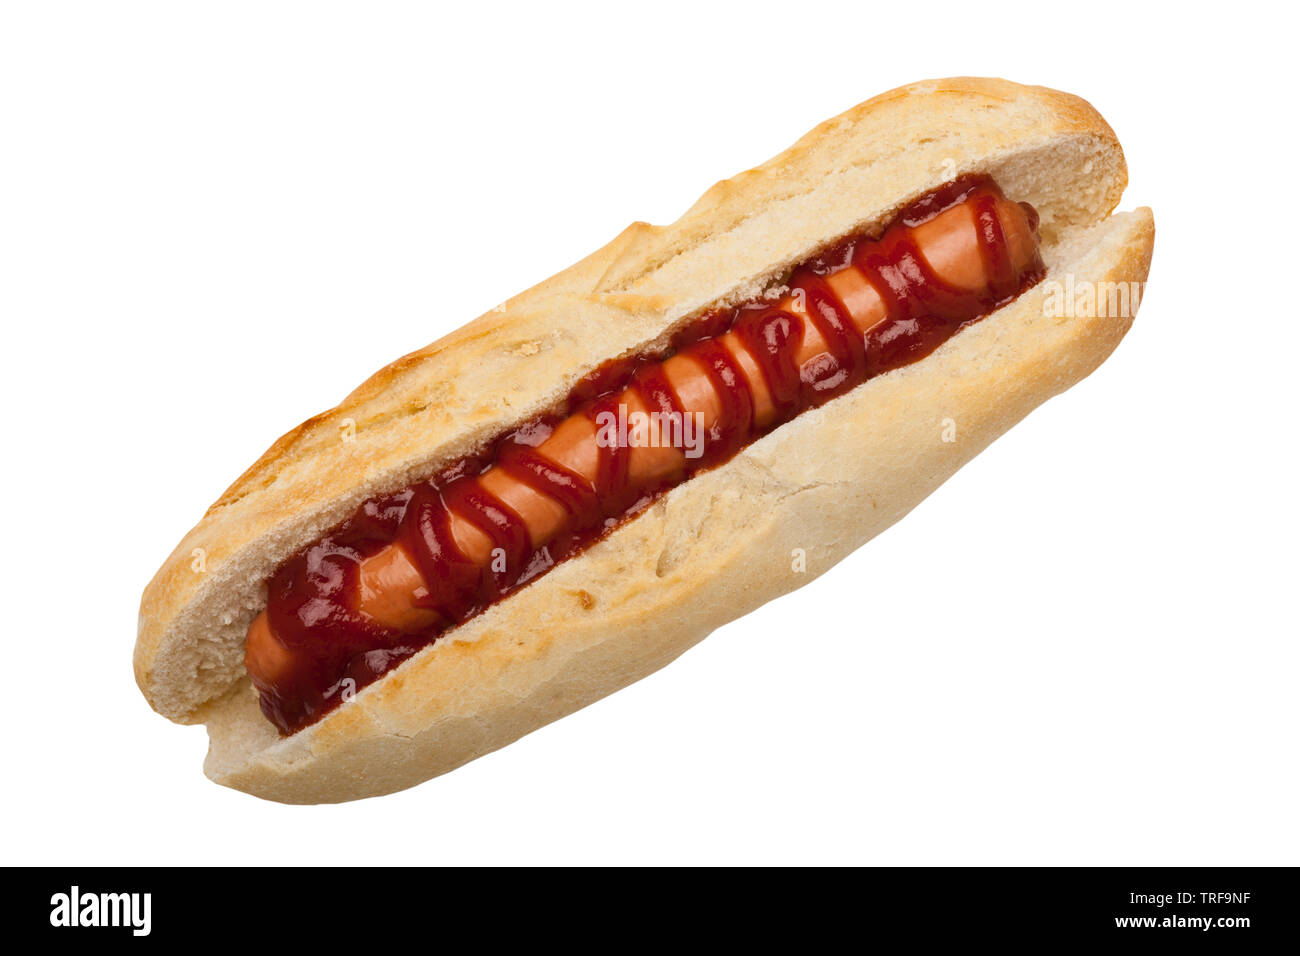 Un perro caliente con la salsa de tomate ketchup sobre un fondo blanco. Foto de stock